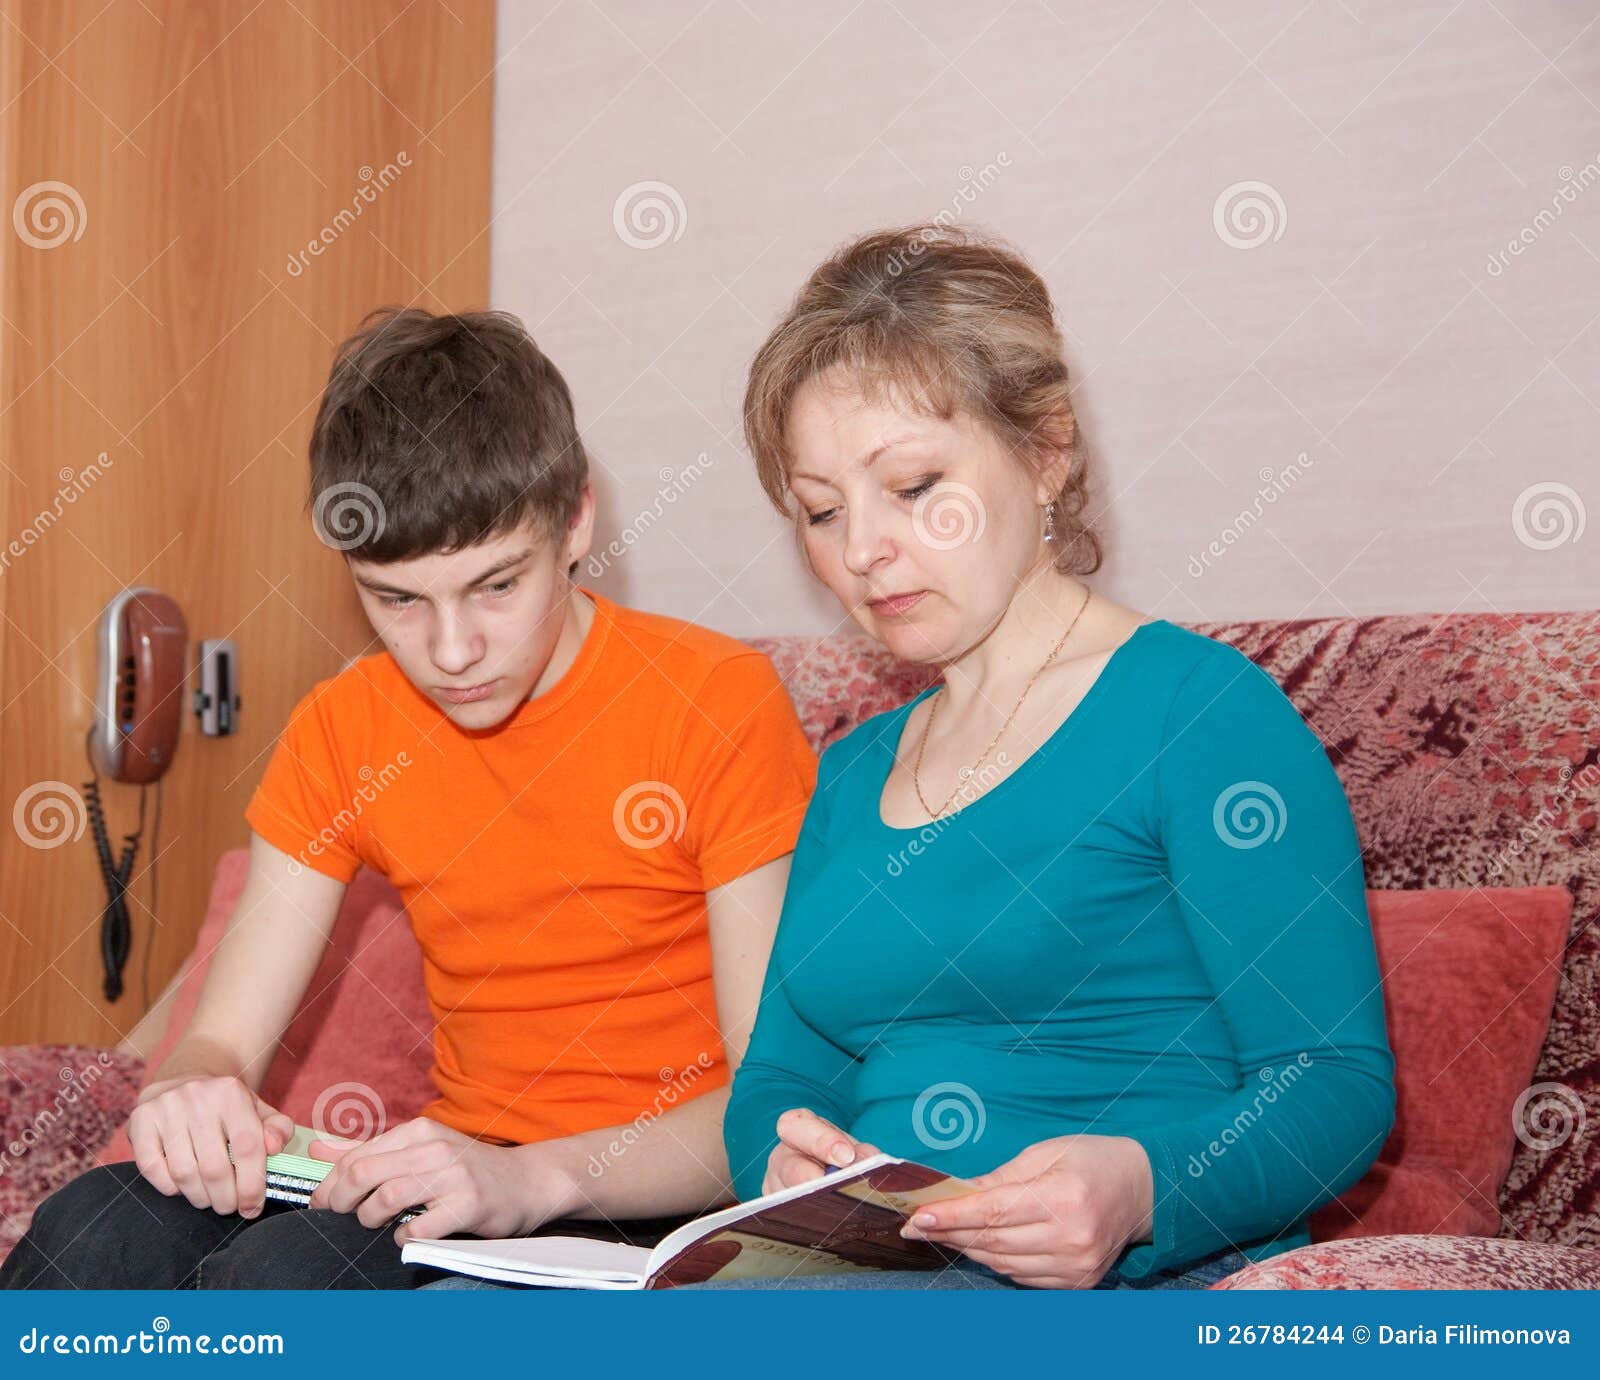 Русская мамка помогла сыну. Мать проводит сына. Мать и сын учатся. Мама показывает сыну картинку. Мама помогает сыну с уроками.